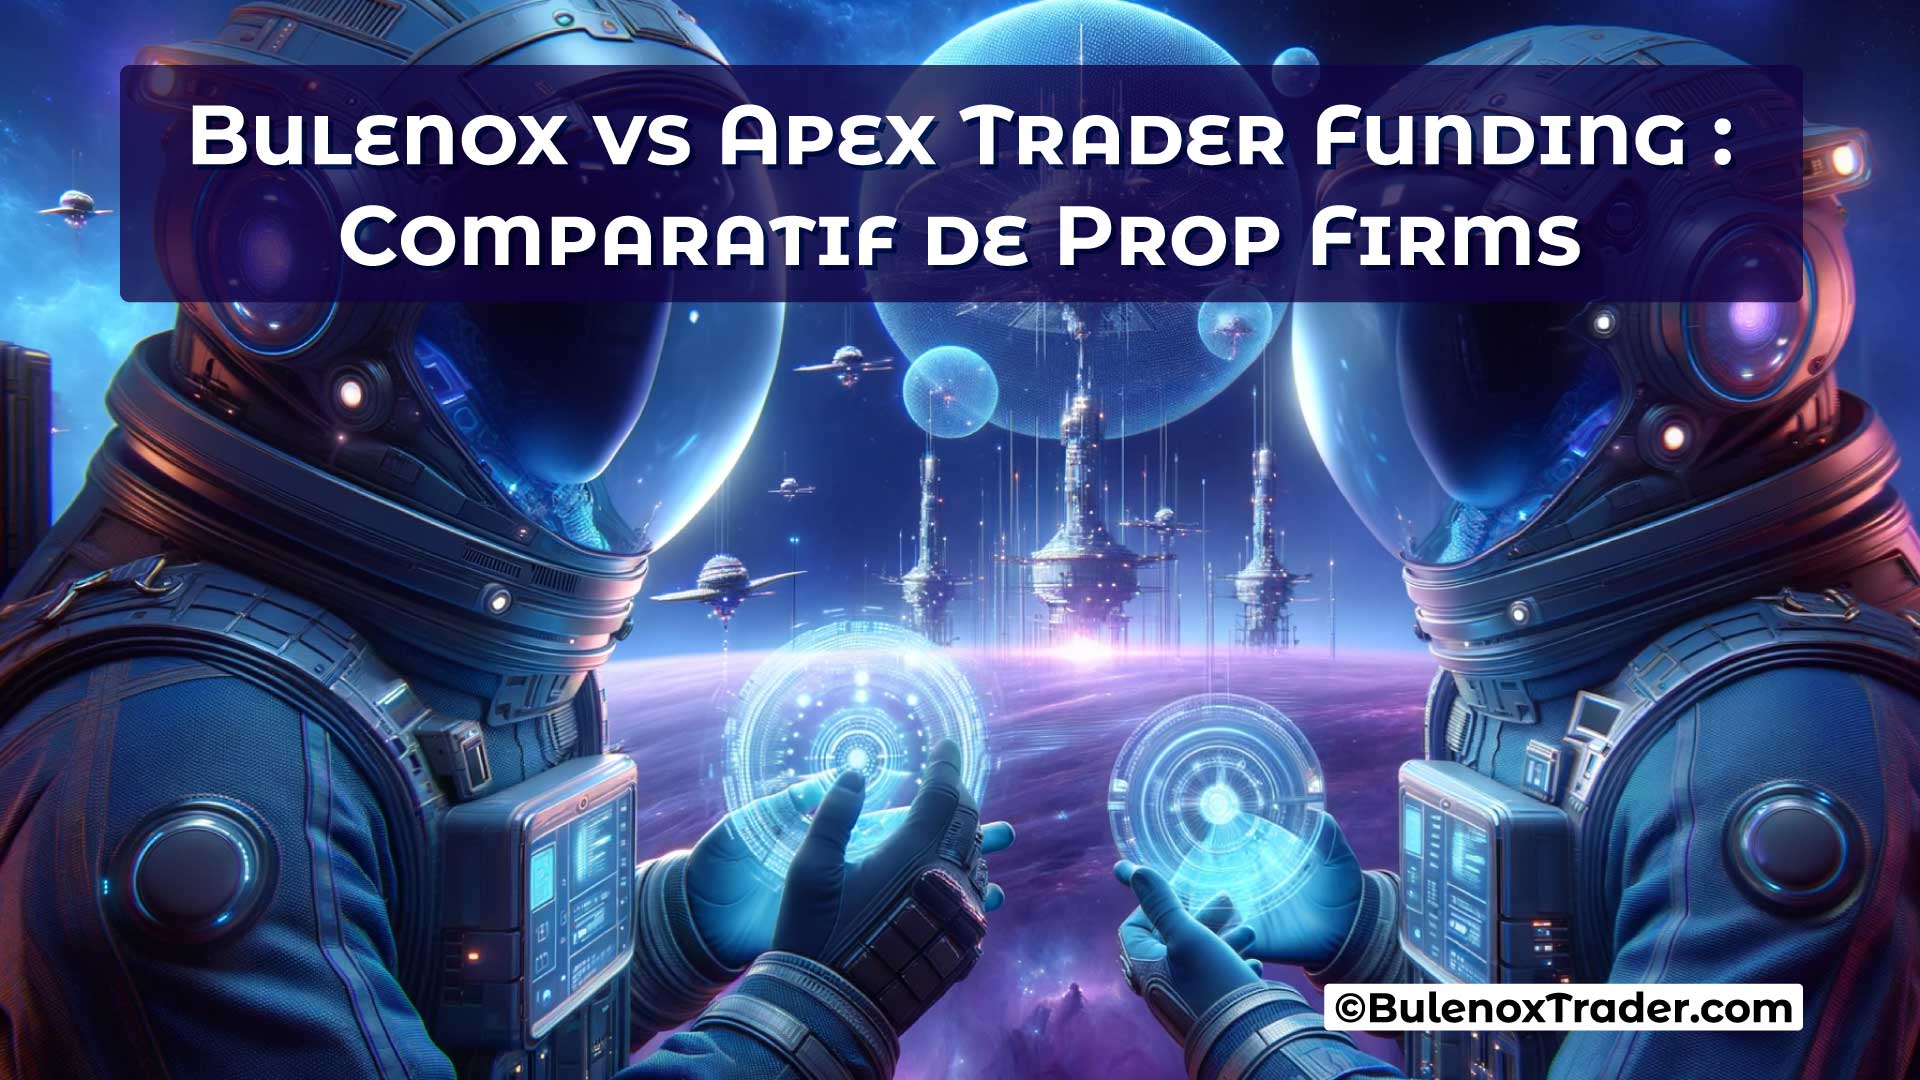 Bulenox-vs-Apex-Trader-Funding-Comparatif-de-Prop-Firms-on-Bulenox-Trader-Website